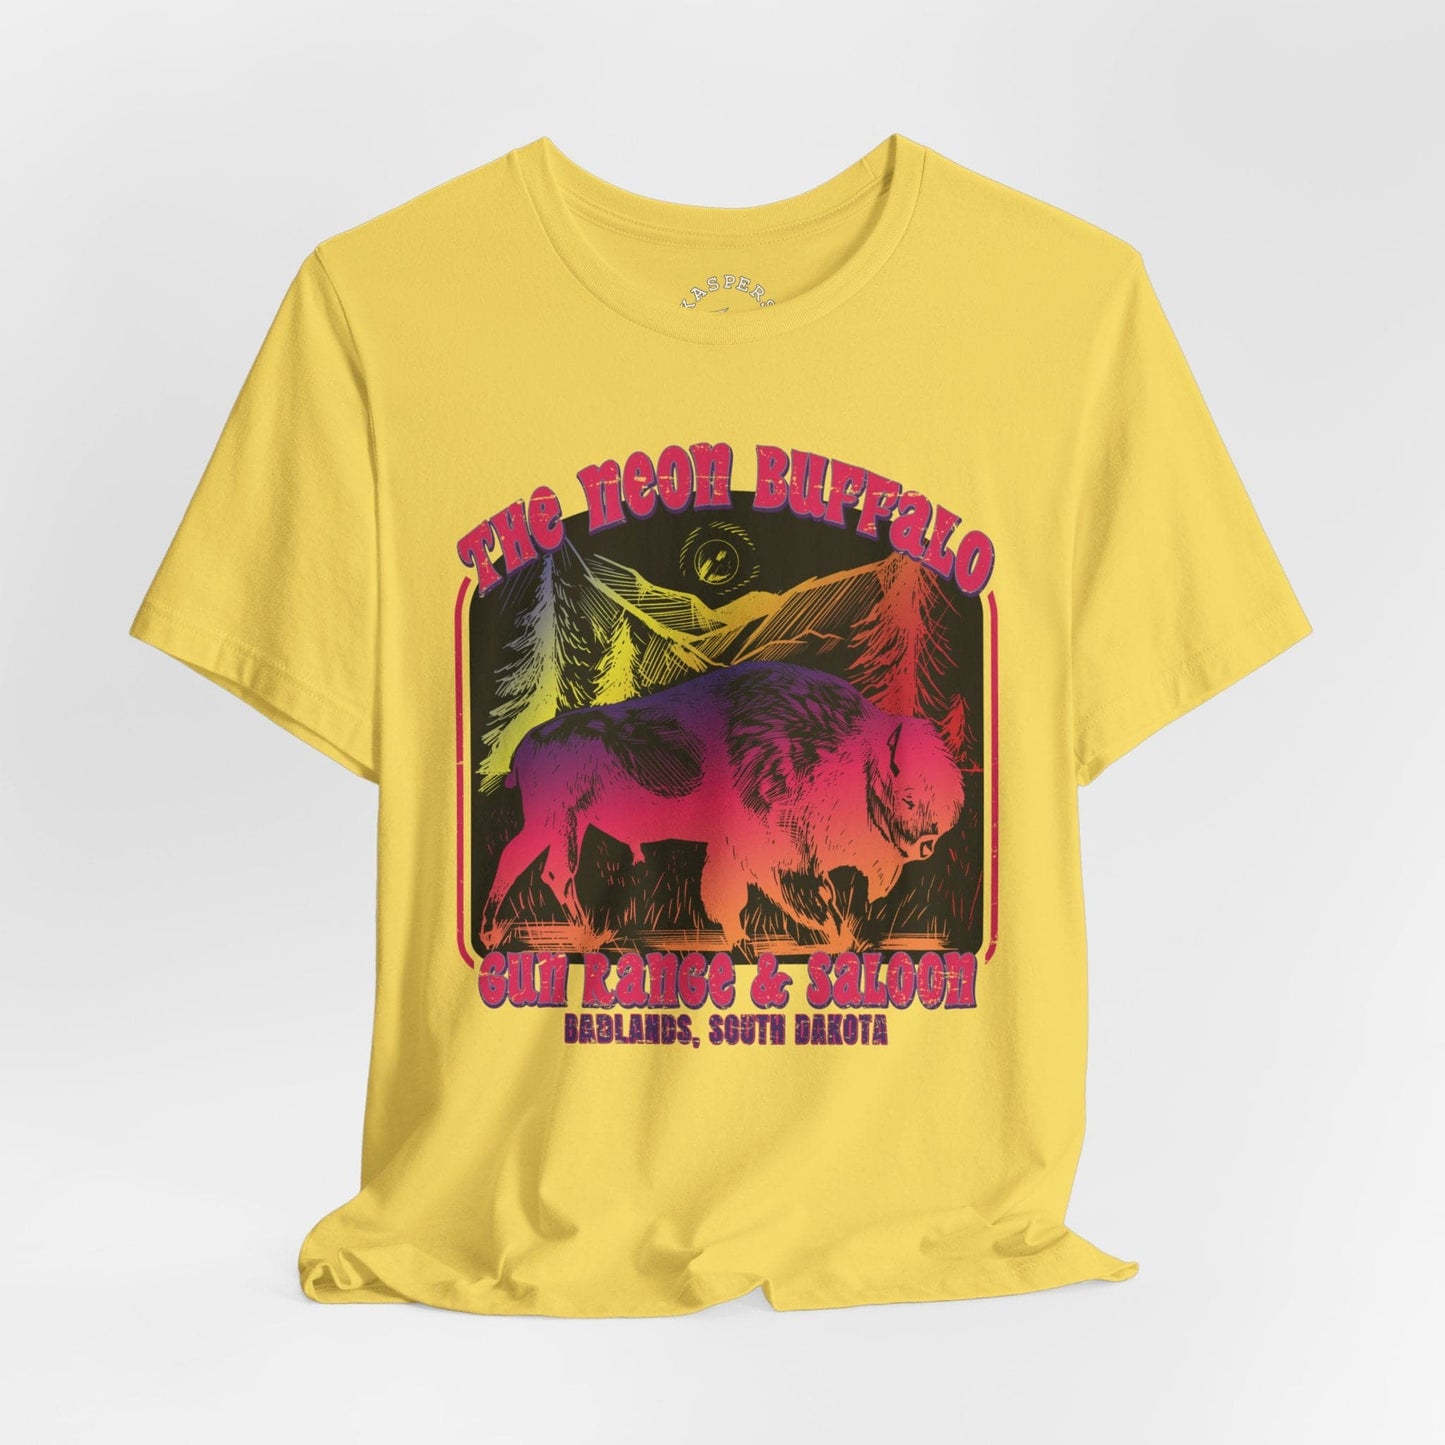 The Neon Buffalo T-Shirt